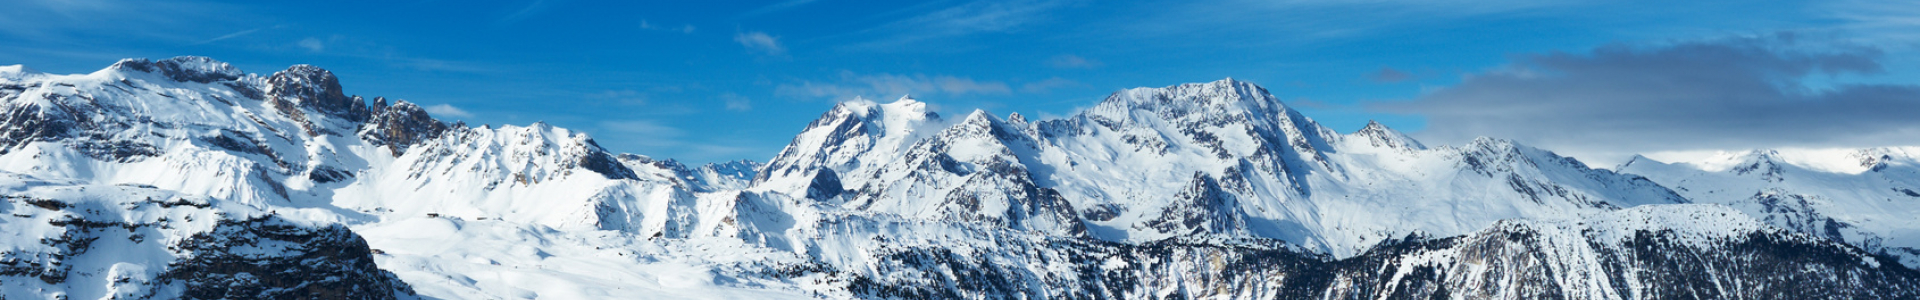 Snowtrex : ski aux vacances de Février, promo locations 8j/7n + forfaits inclus